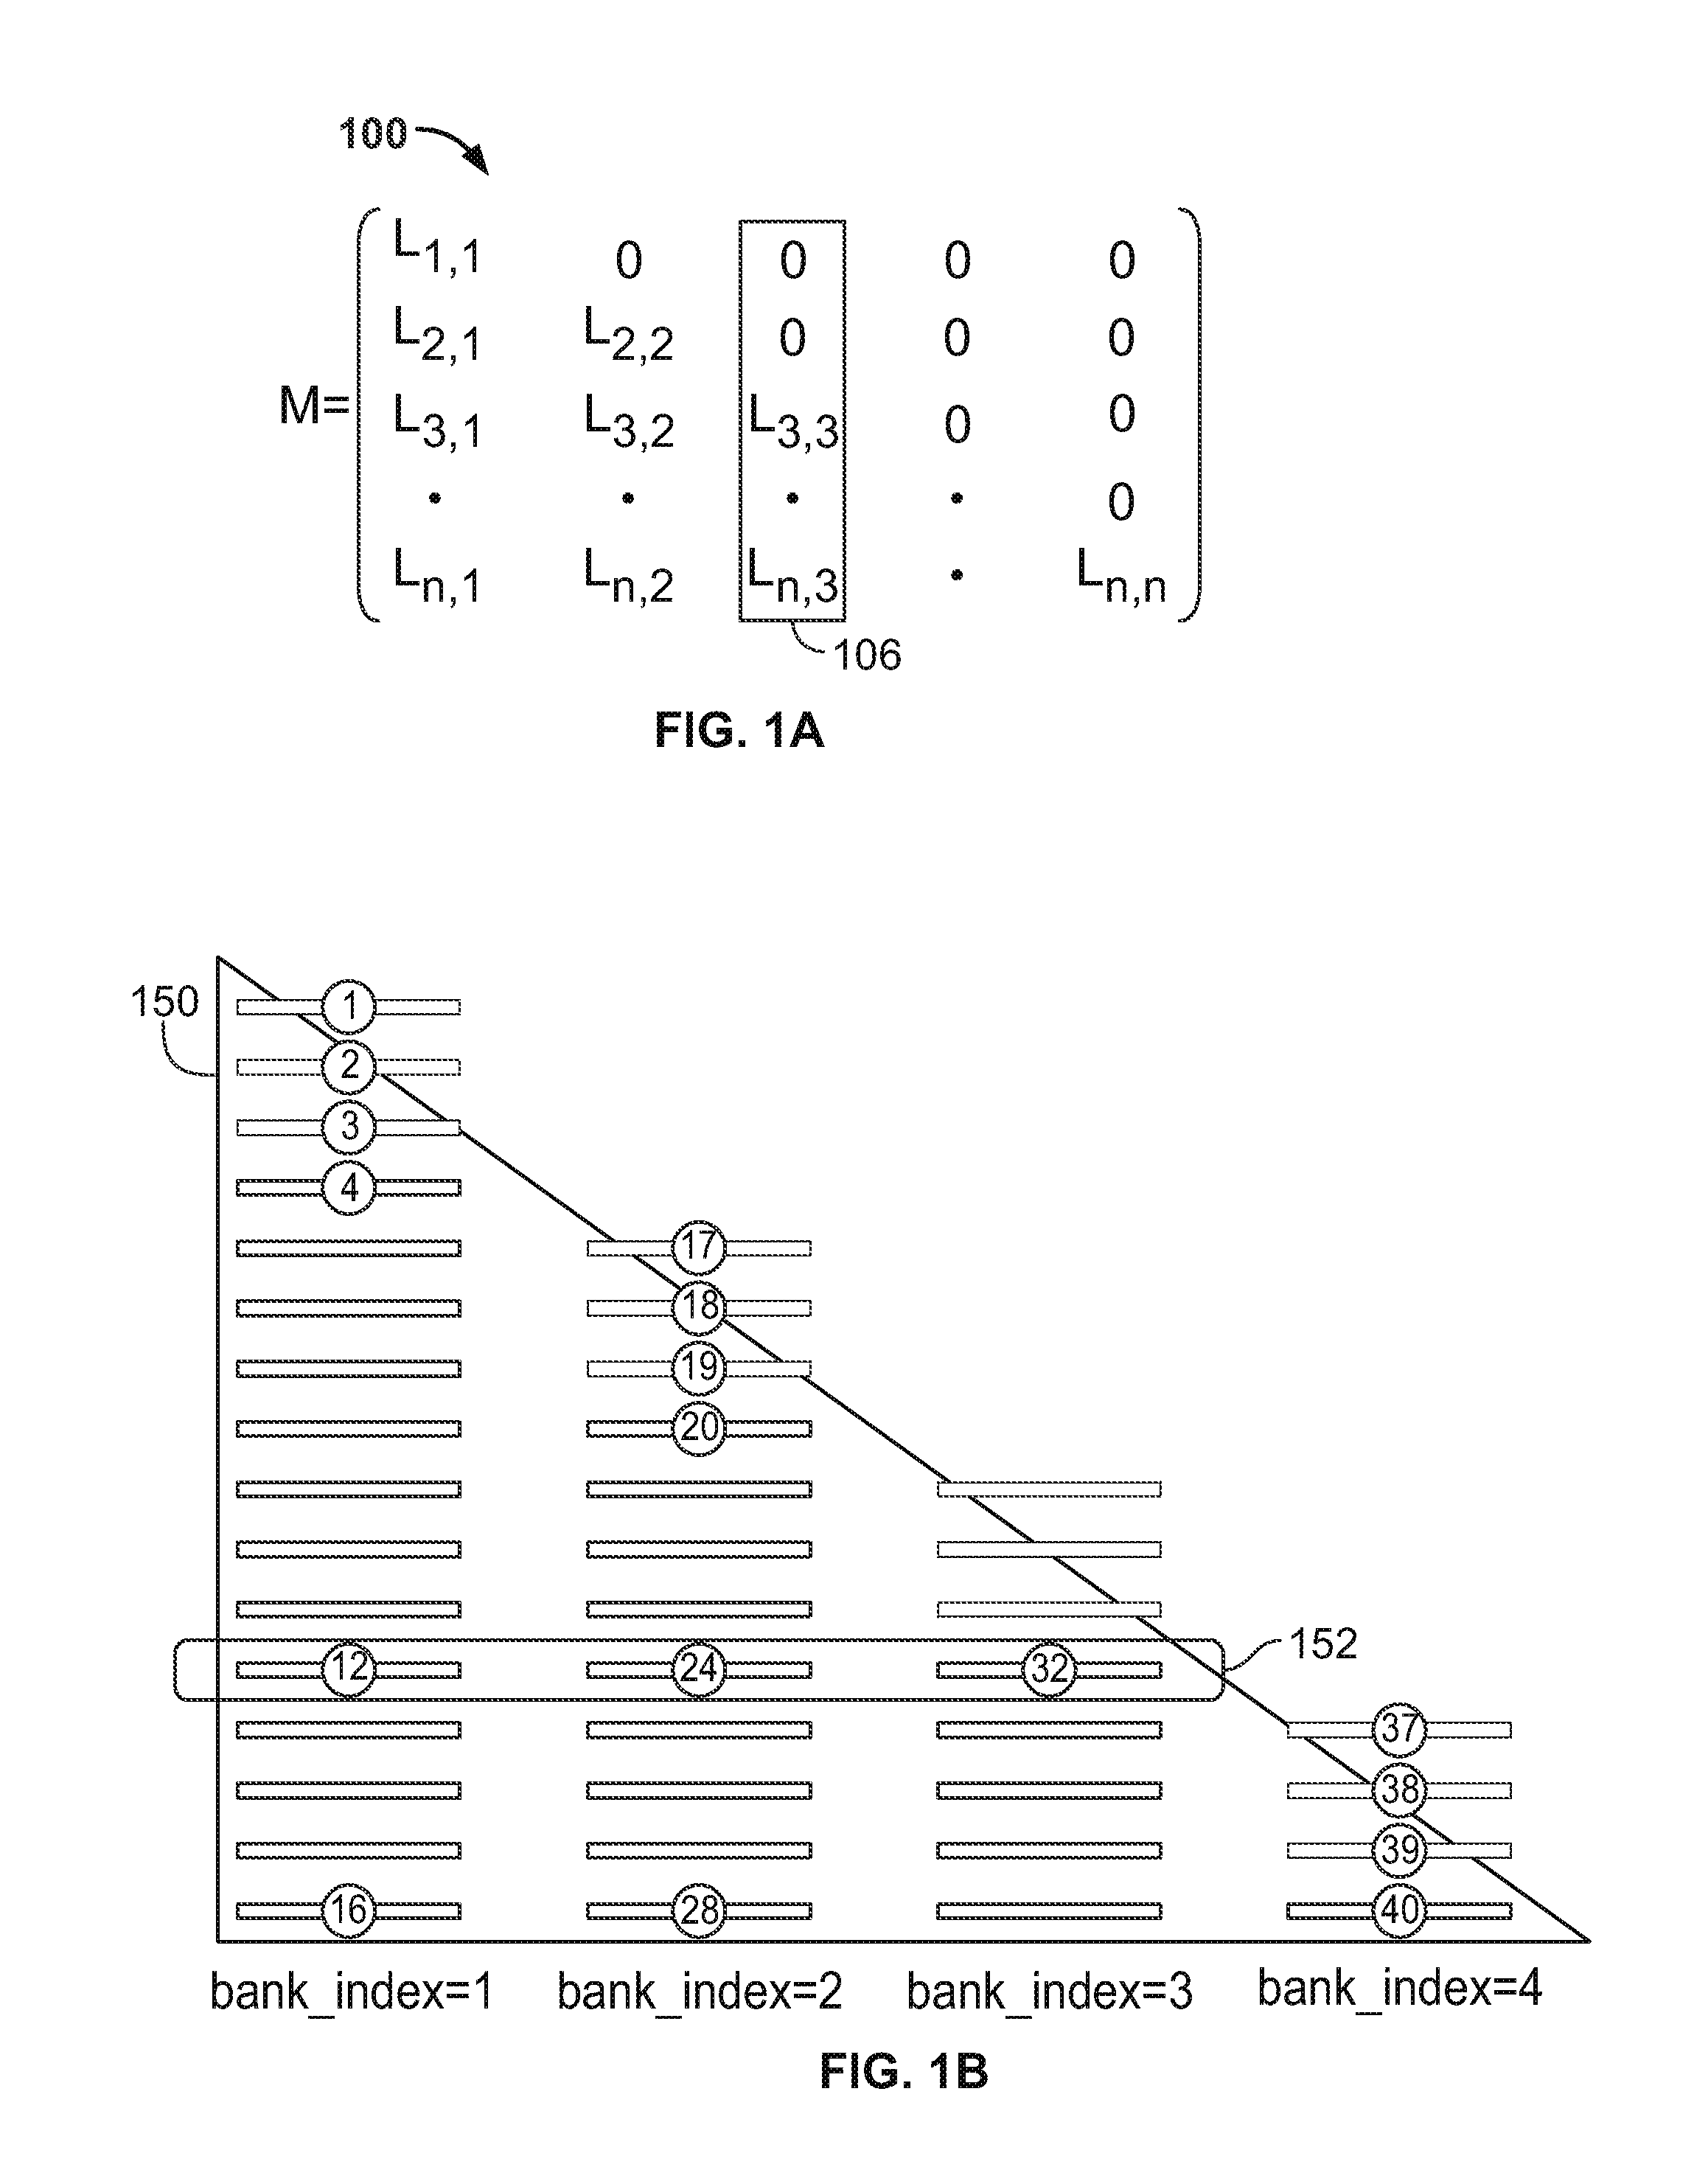 Matrix decomposition using dataflow techniques